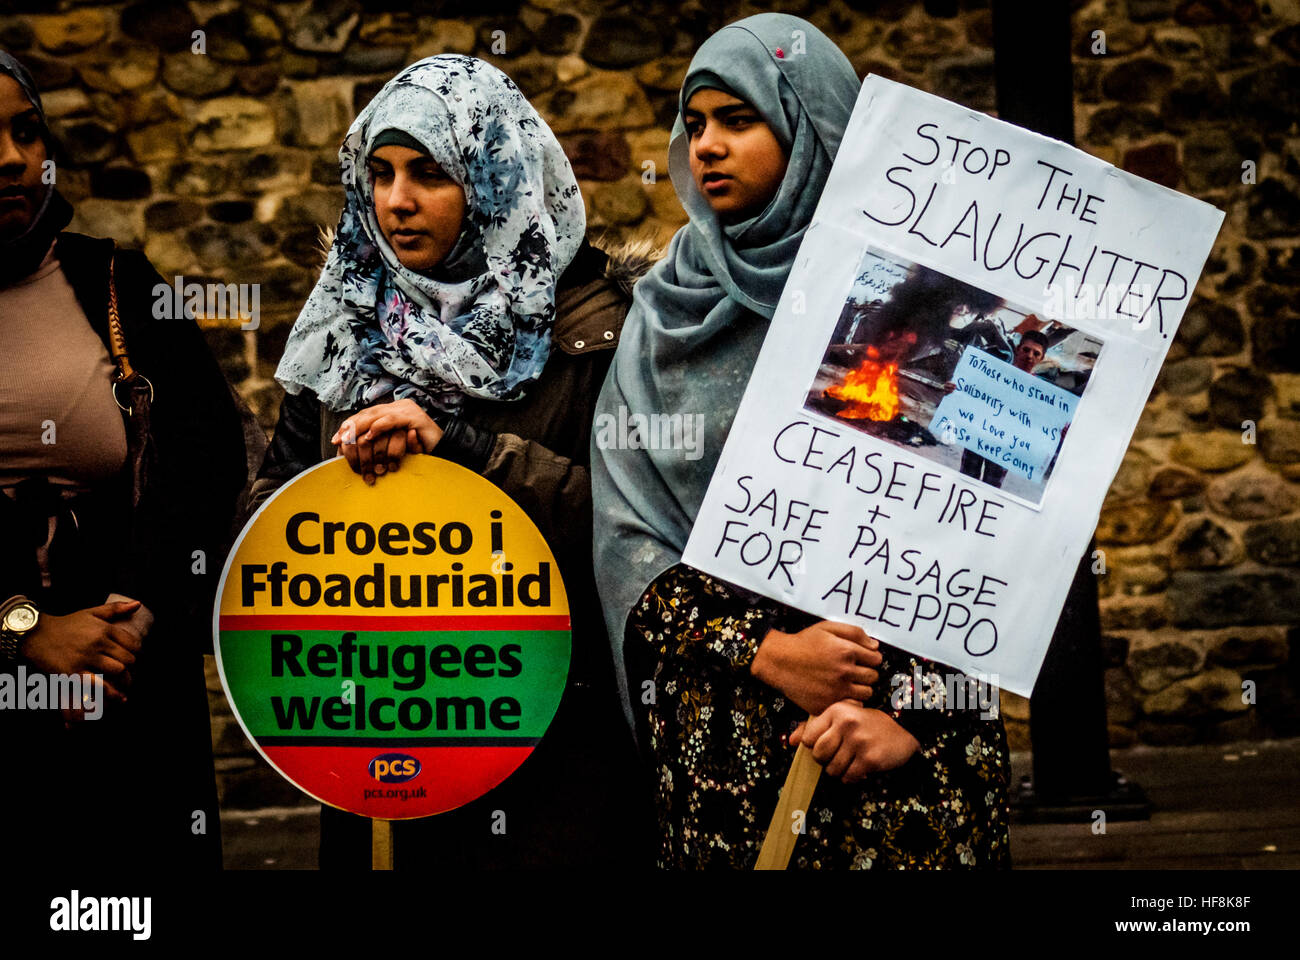 Cardiff, UK. 29. Dezember 2016. Demonstranten versammeln sich am Schloss von Cardiff in Wales zu sensibilisieren und zeigen ihre Solidarität mit dem Volk von Aleppo in den Krieg zerrissenen Land Syrien © Jim Holz/Alamy Live News Stockfoto